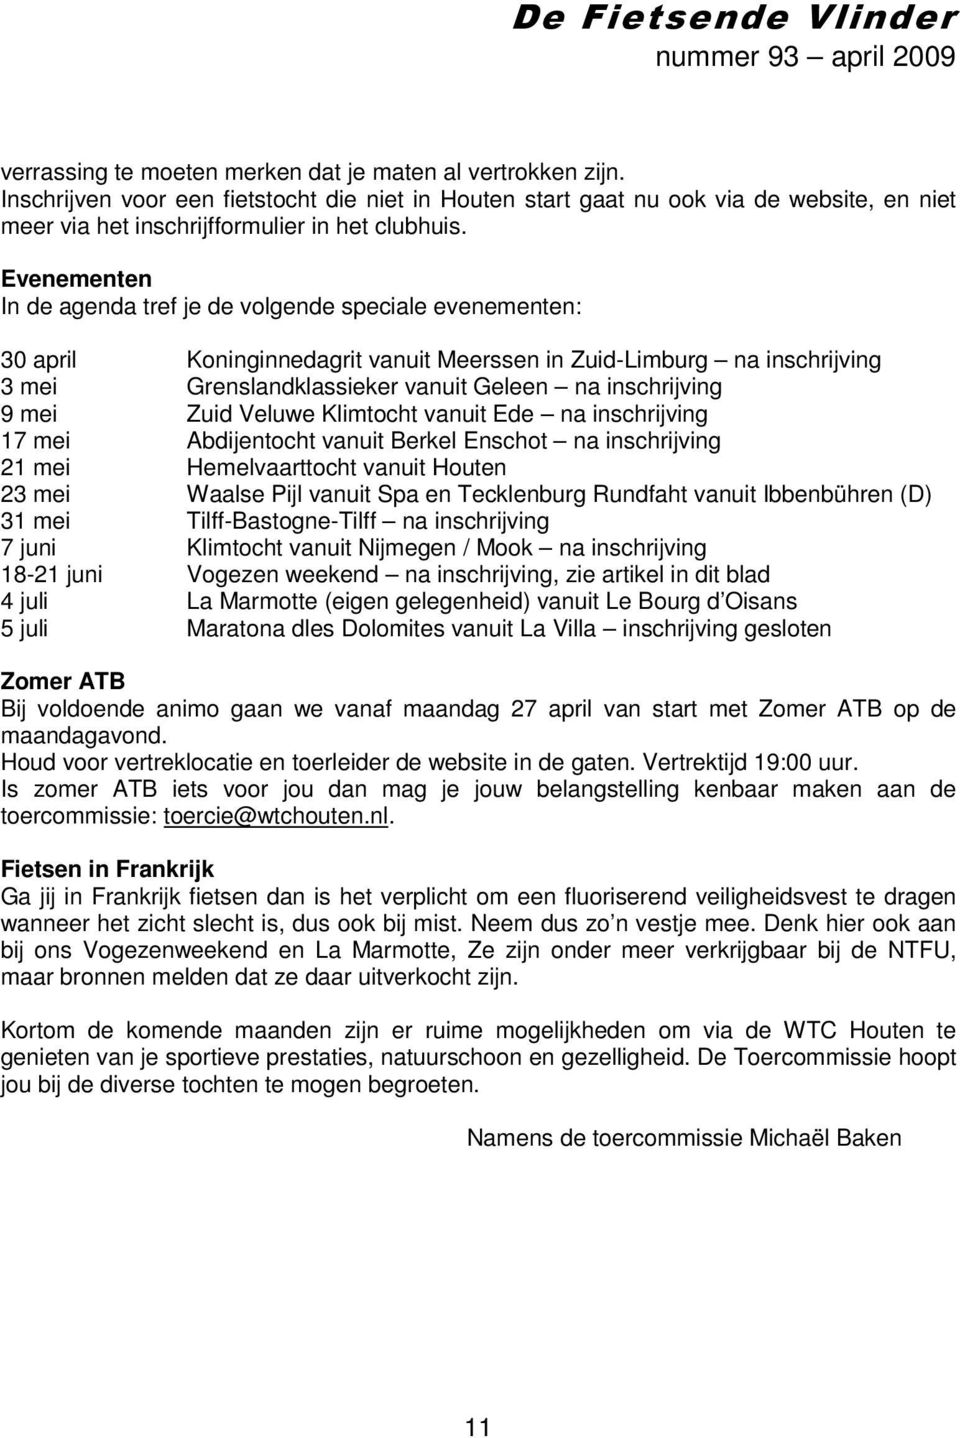 Evenementen In de agenda tref je de volgende speciale evenementen: 30 april Koninginnedagrit vanuit Meerssen in Zuid-Limburg na inschrijving 3 mei Grenslandklassieker vanuit Geleen na inschrijving 9